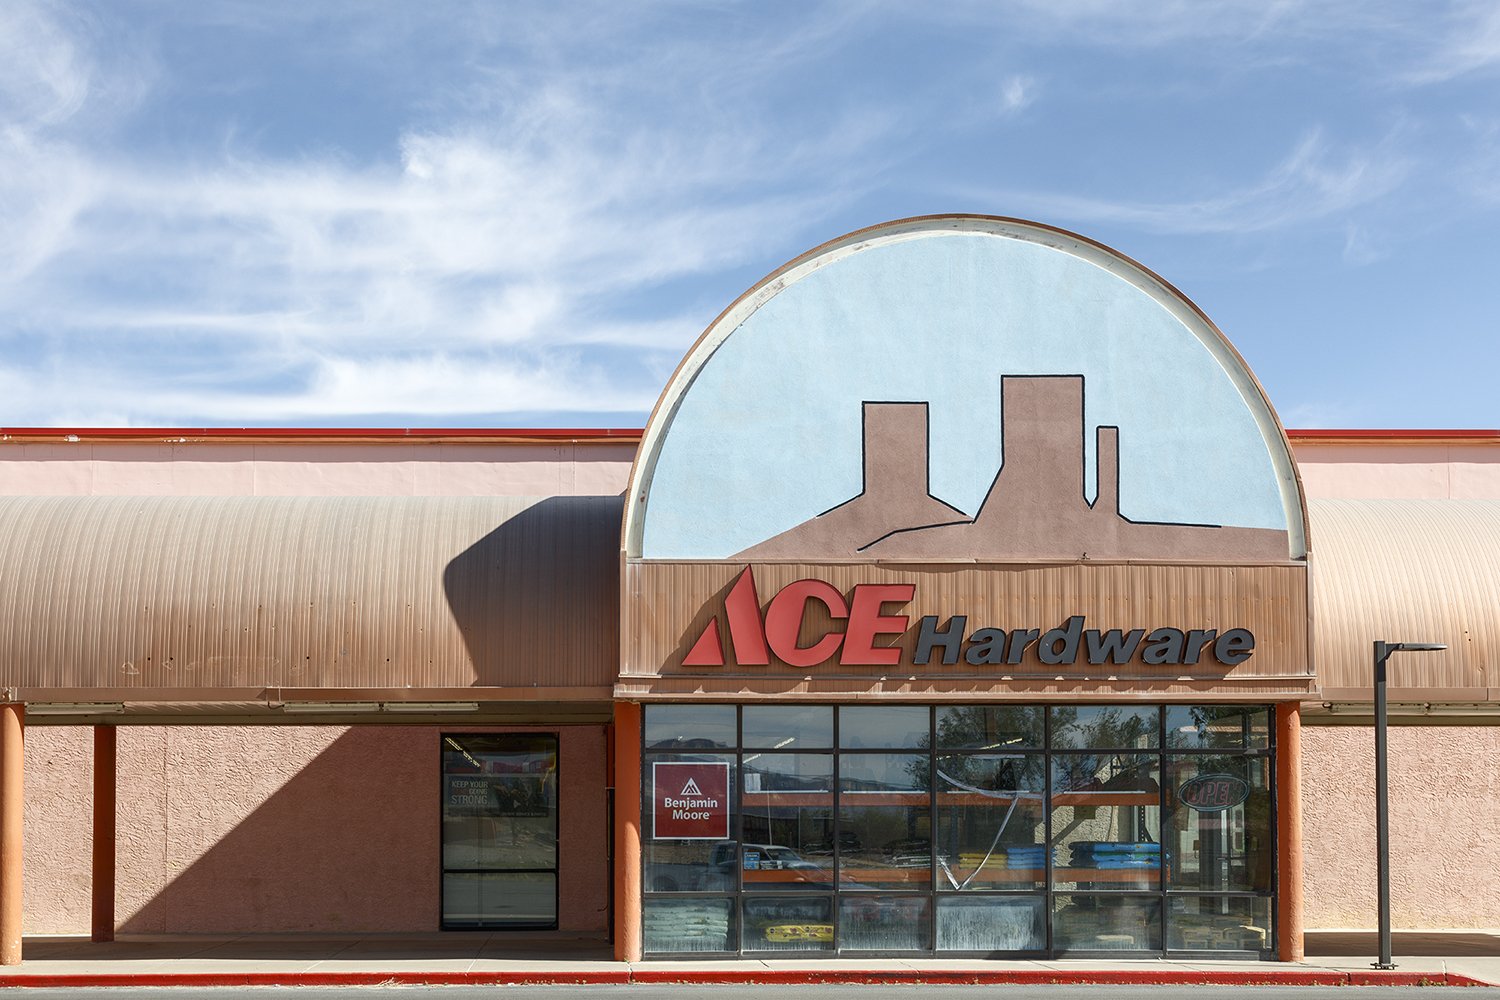 Ace Hardware, Kayenta, Arizona